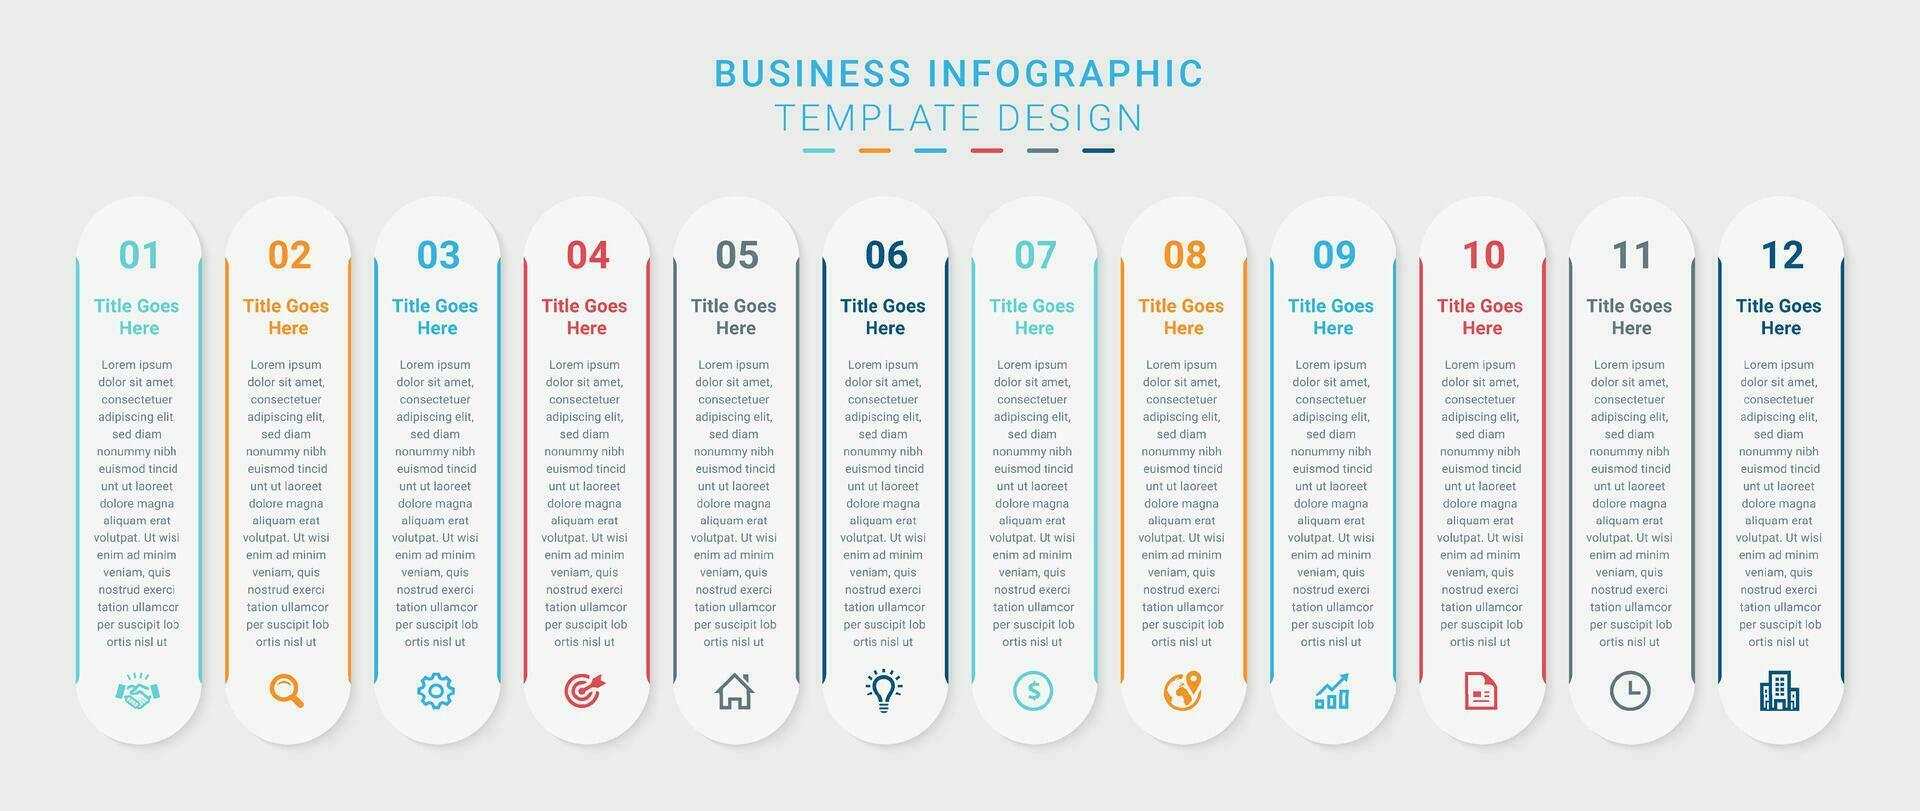 einfach und sauber Präsentation modern Geschäft Infografik Design Vorlage mit 12 Bar von Optionen vektor